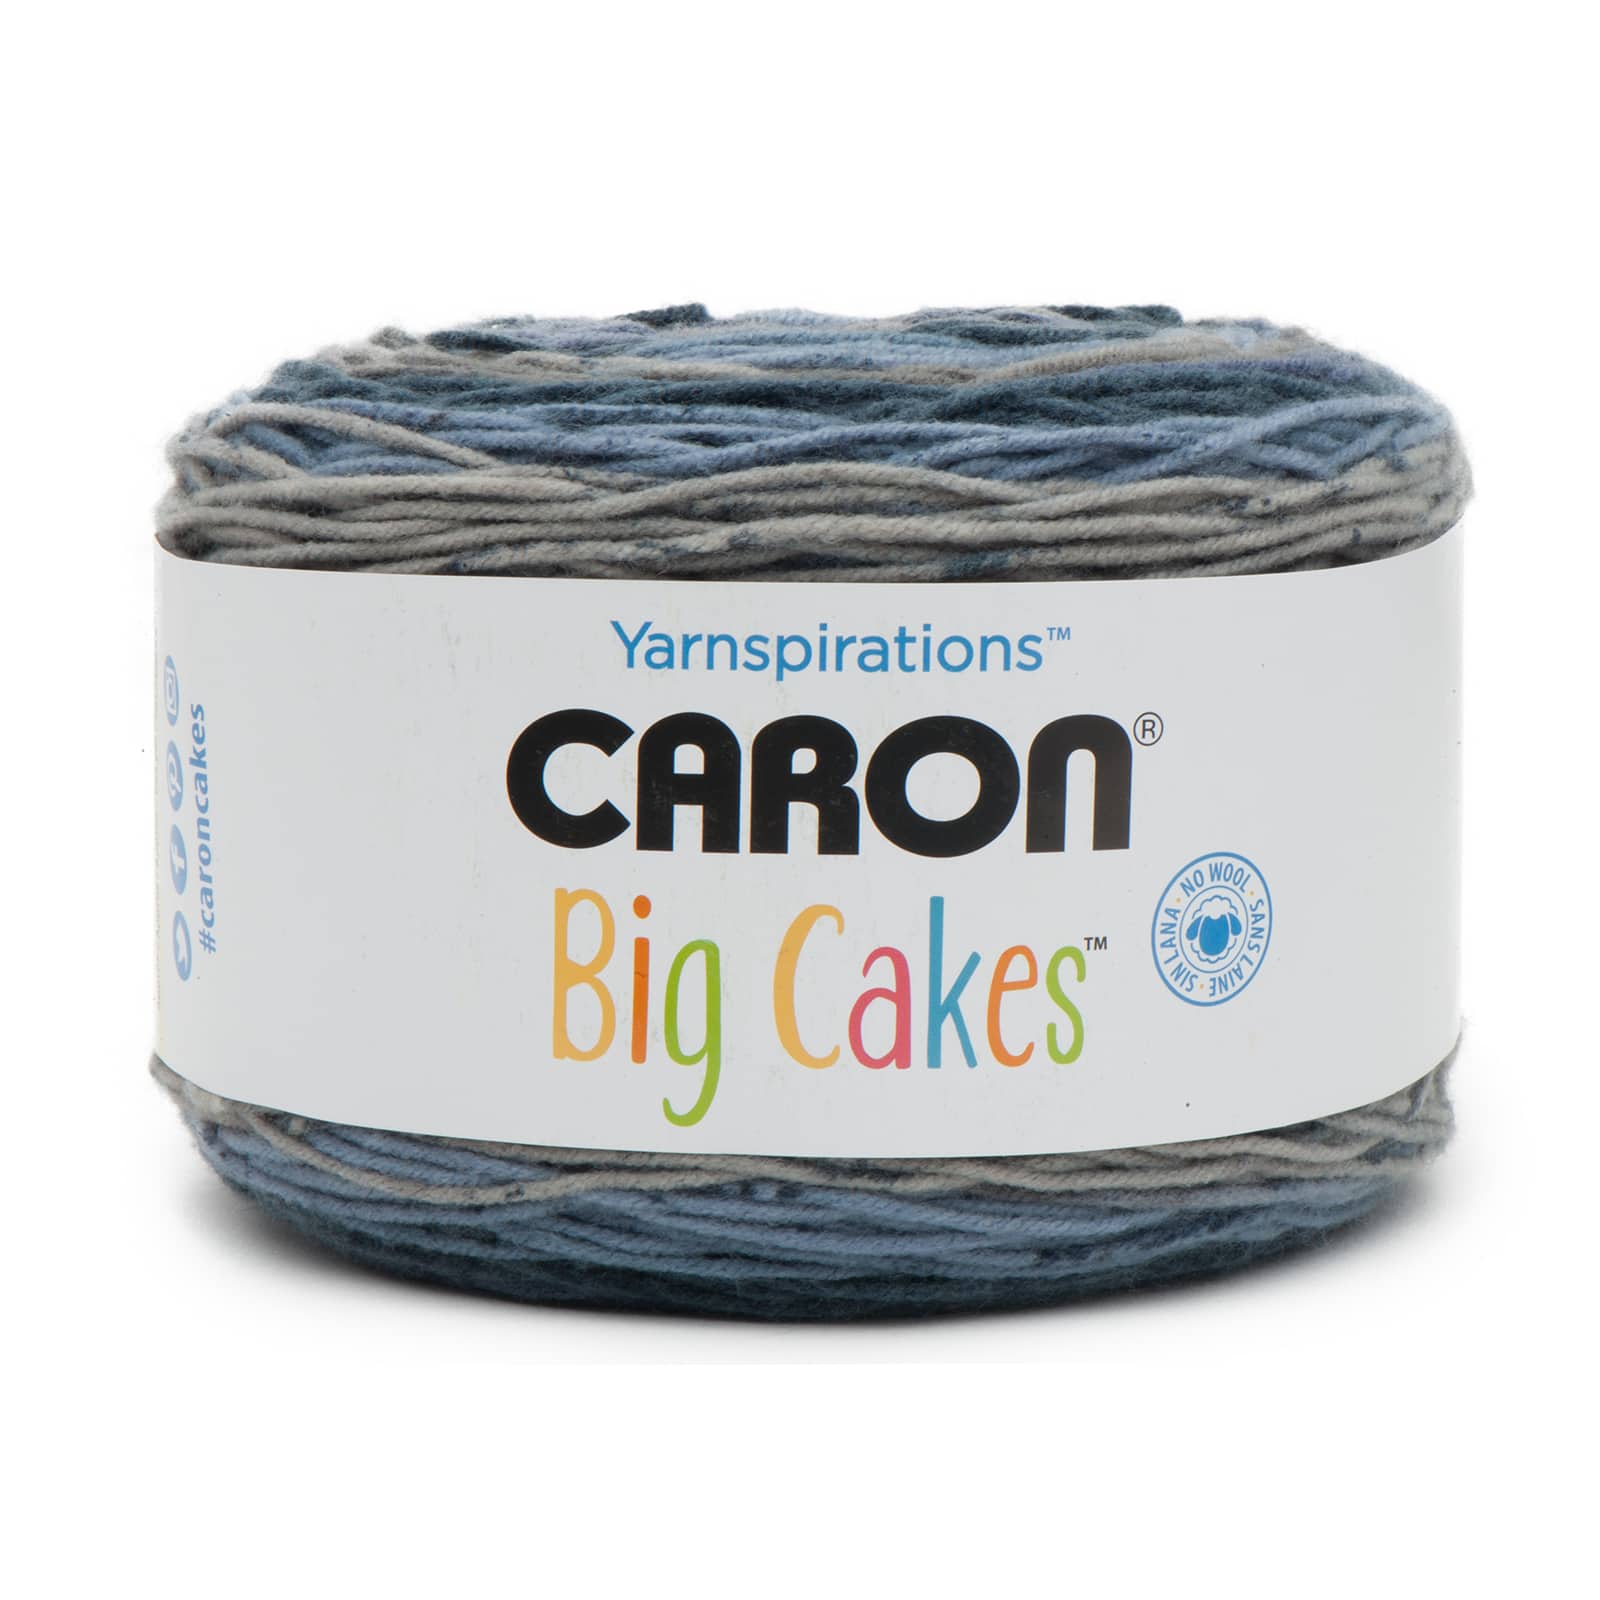 Buy in Bulk - 12 Pack: Caron® Big Cakes™ Yarn